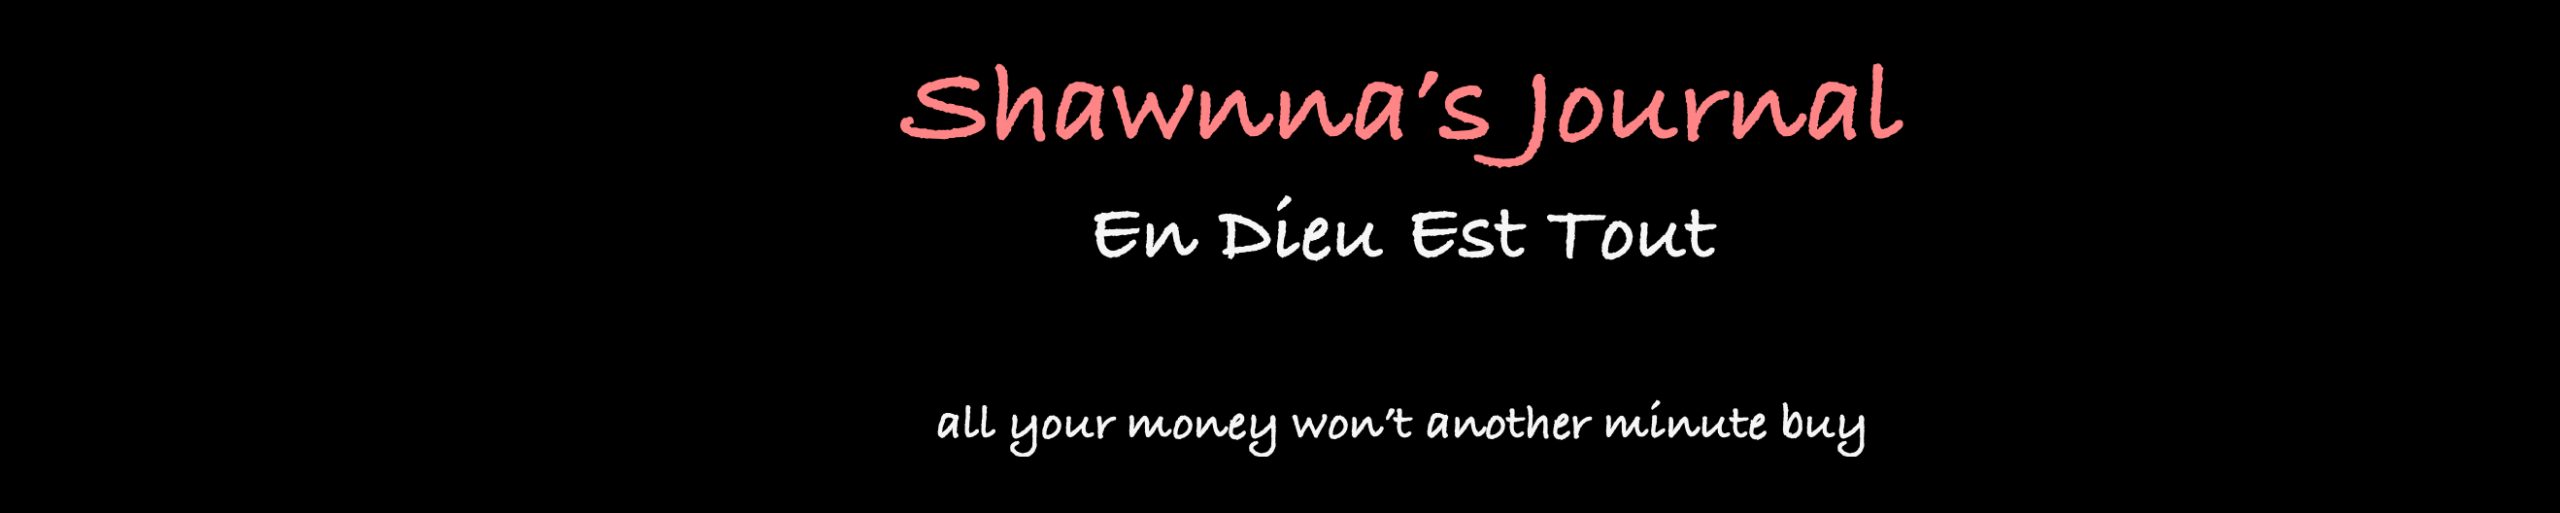 shawnna.org